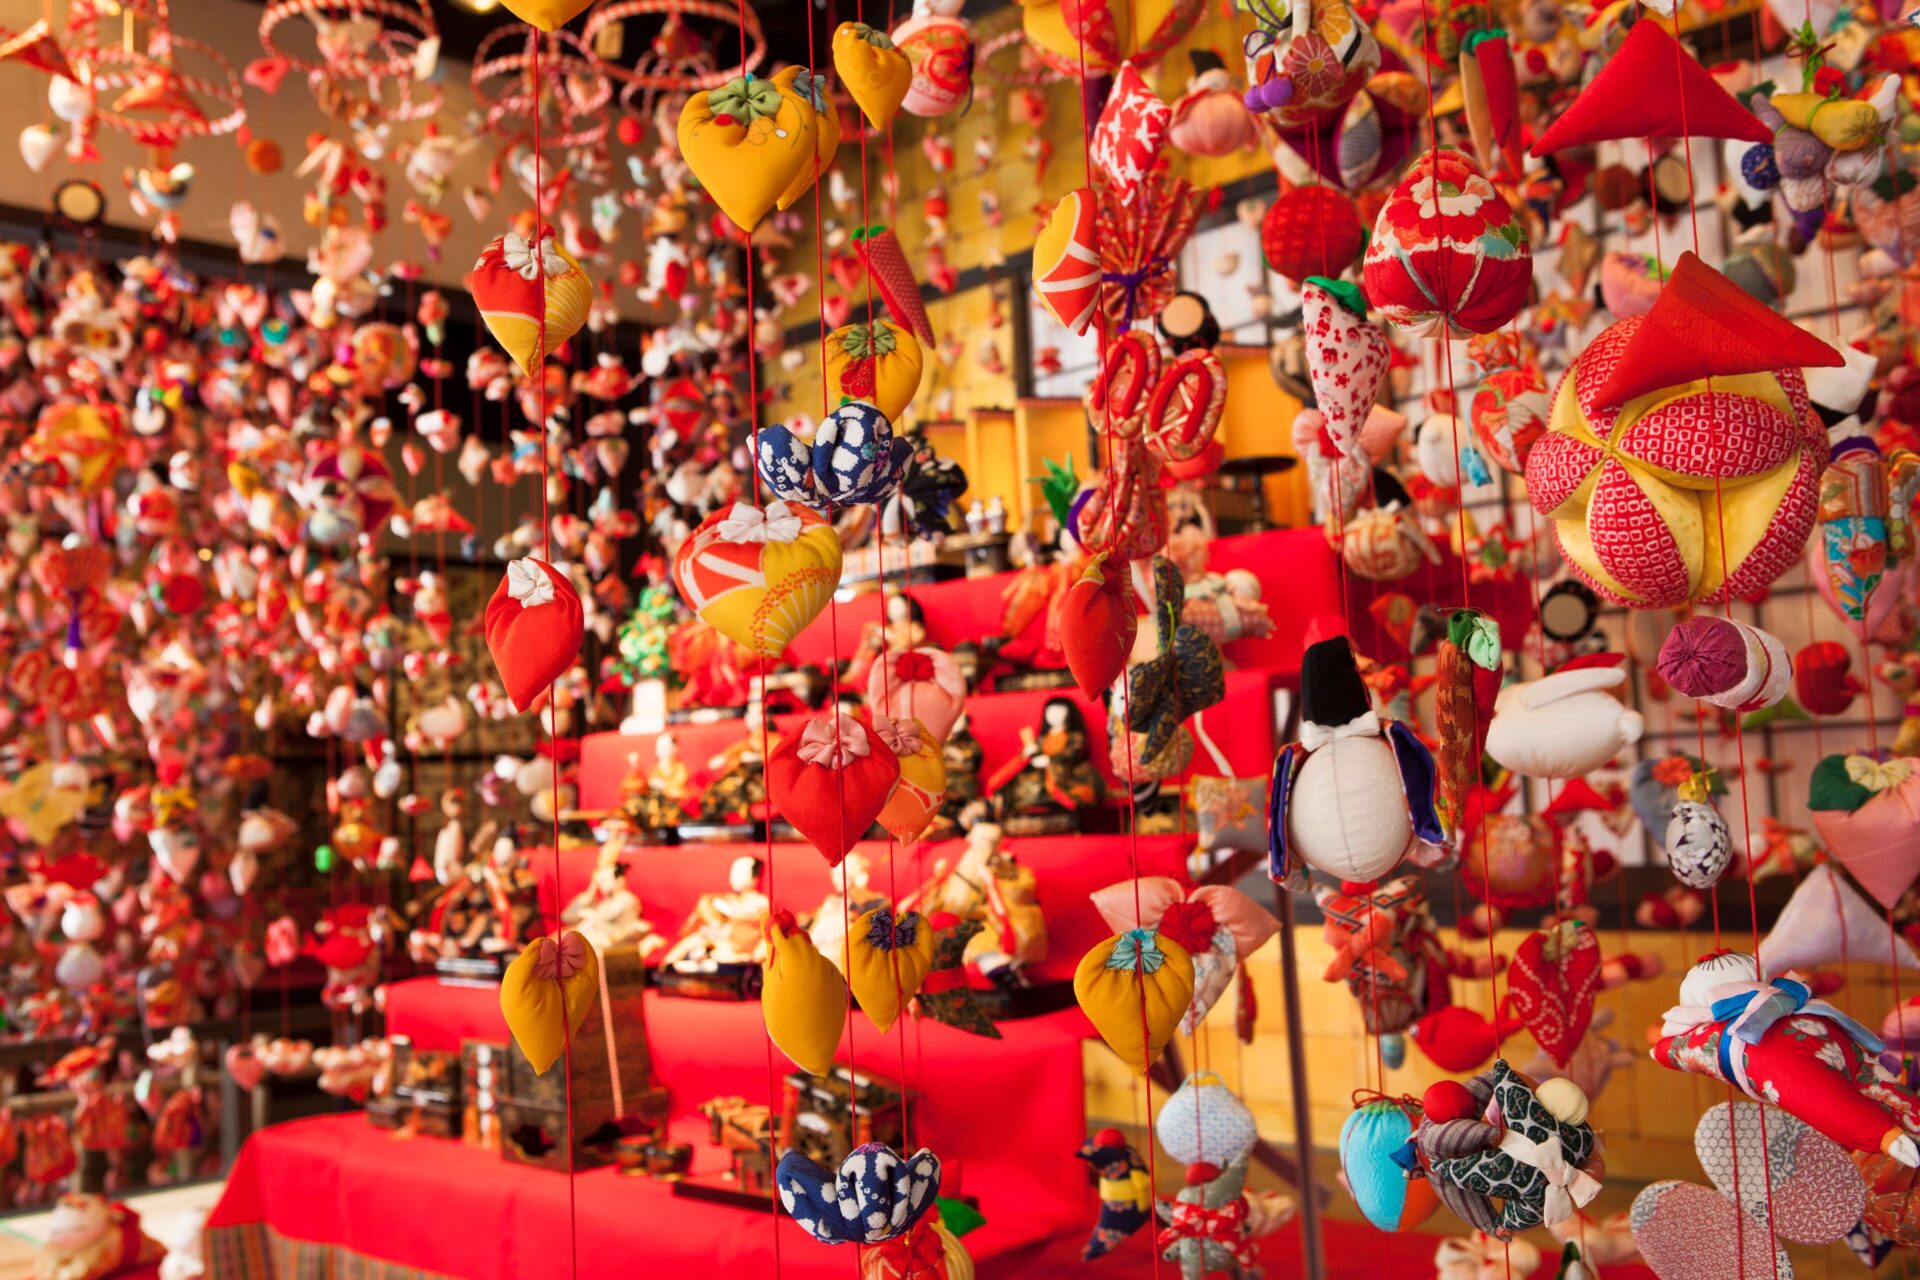 雛祭りの時雛段の両脇に人形を飾る「雛のつるし飾り」